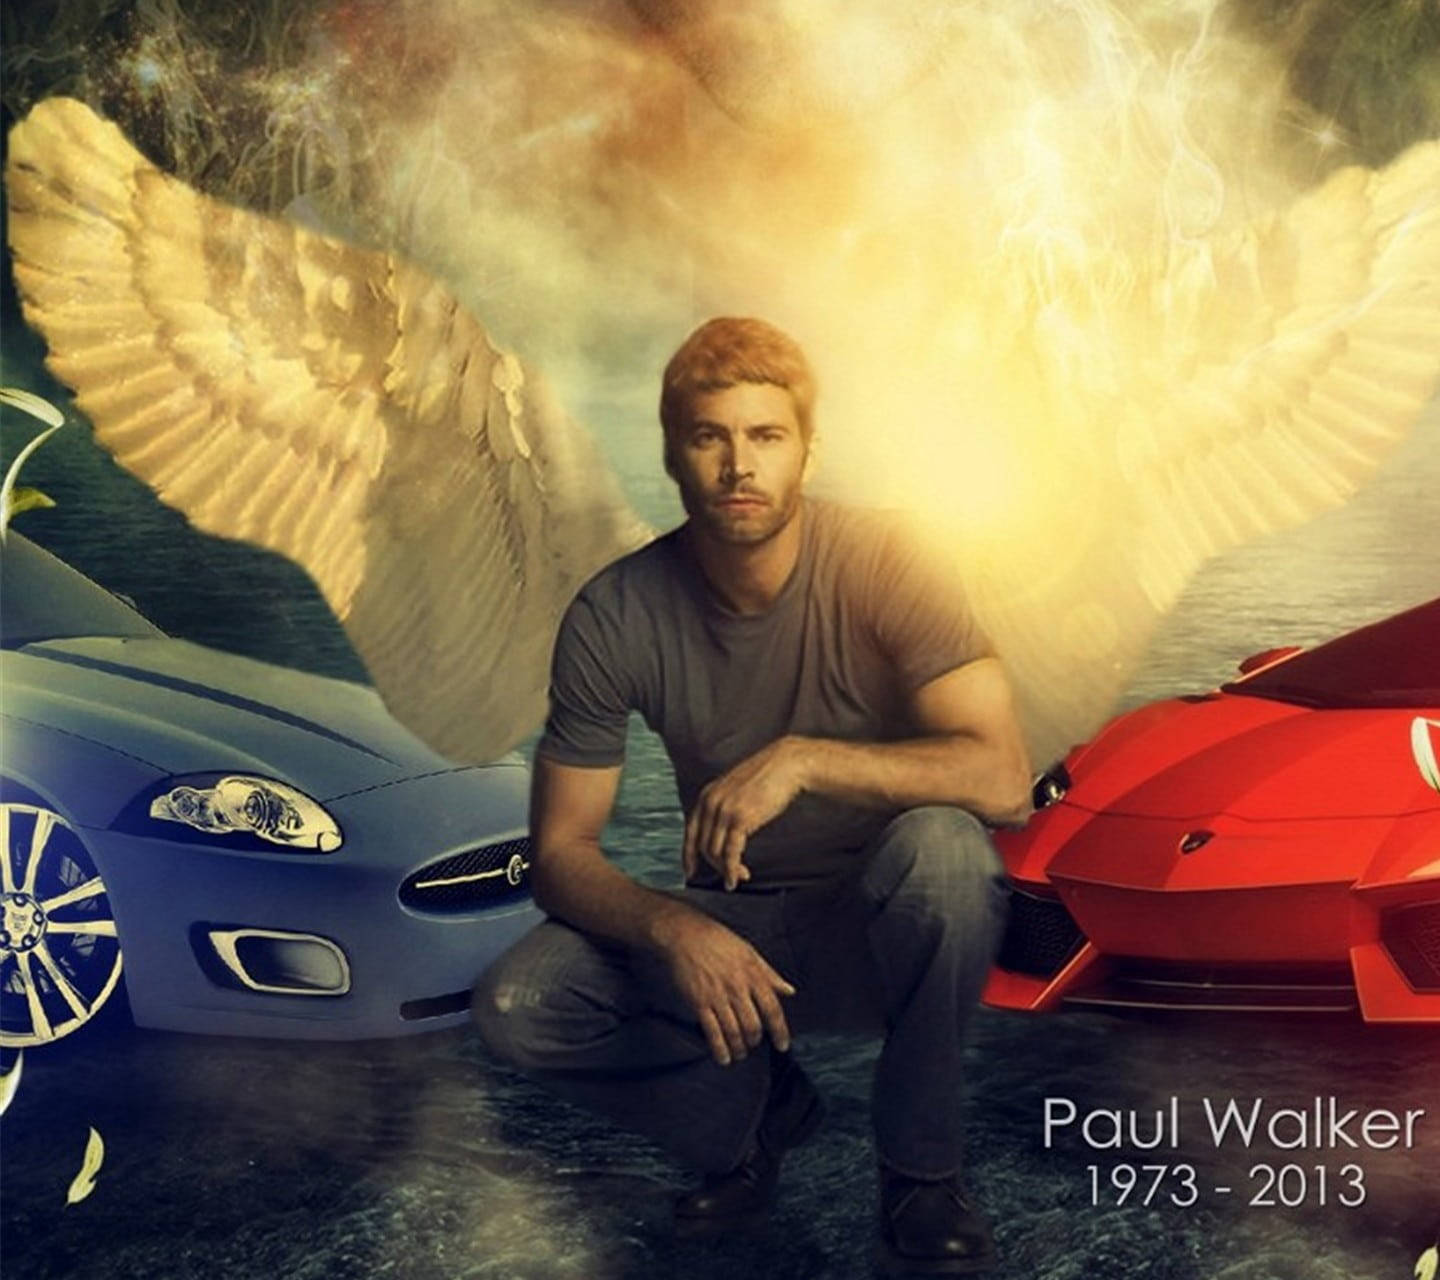 Paul Walker With Angel Wings Wallpaper